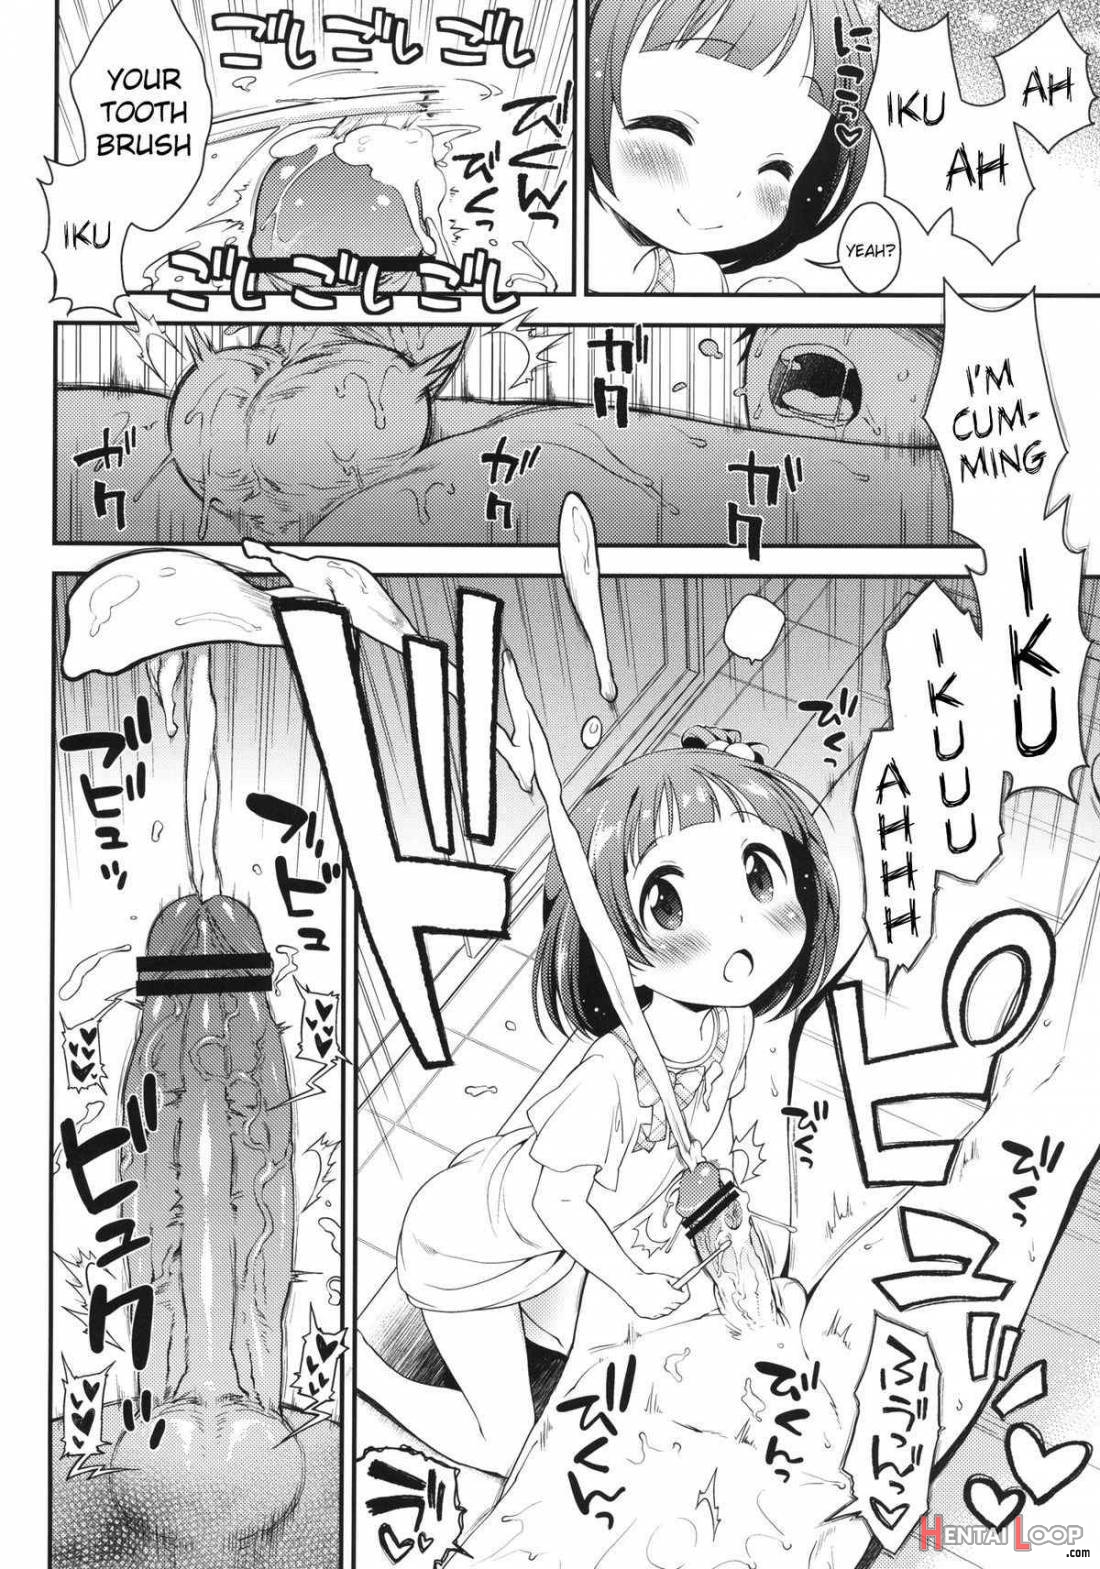 Iku-chan no Seichou Nikki page 7